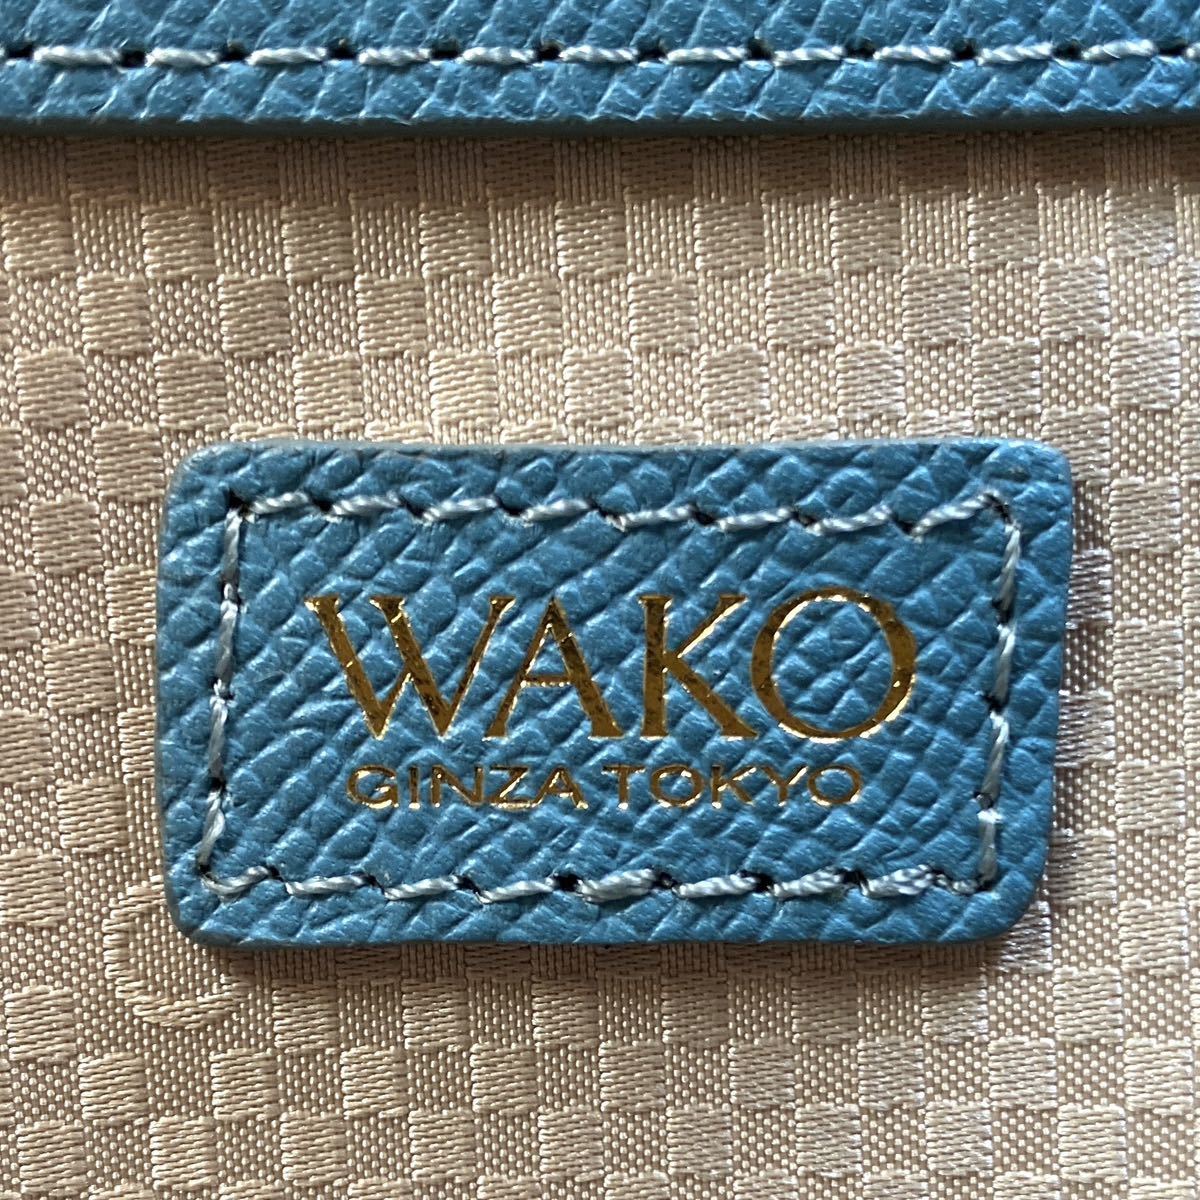 美品 WAKO ワコウ 銀座 和光 ライトブルー ゴールド金具 サフィアーノ 